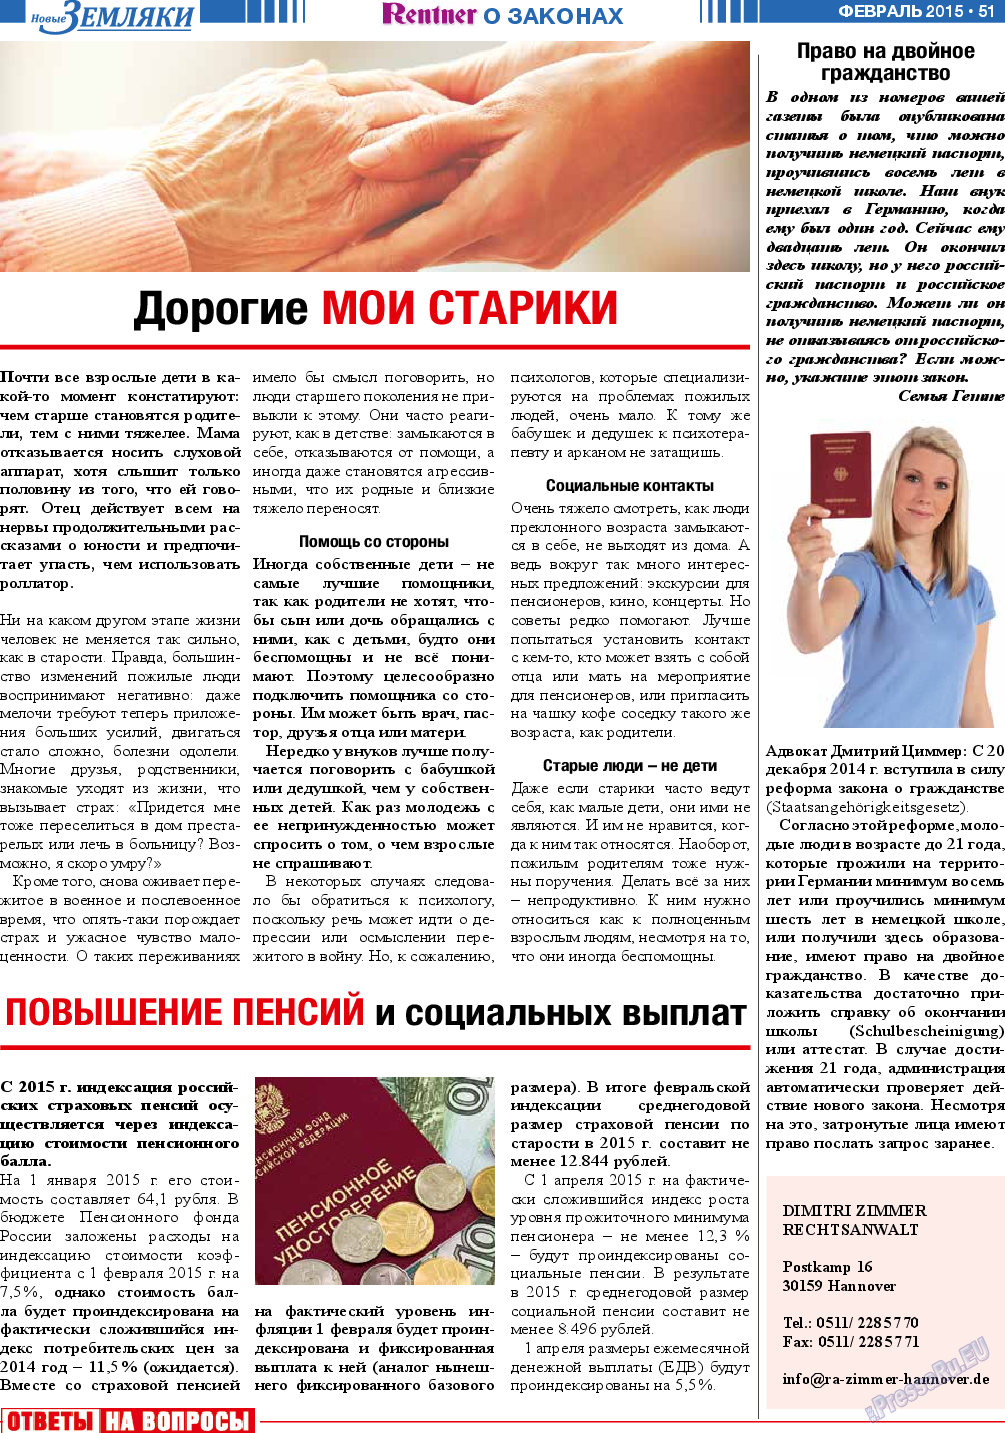 Новые Земляки, газета. 2015 №2 стр.51